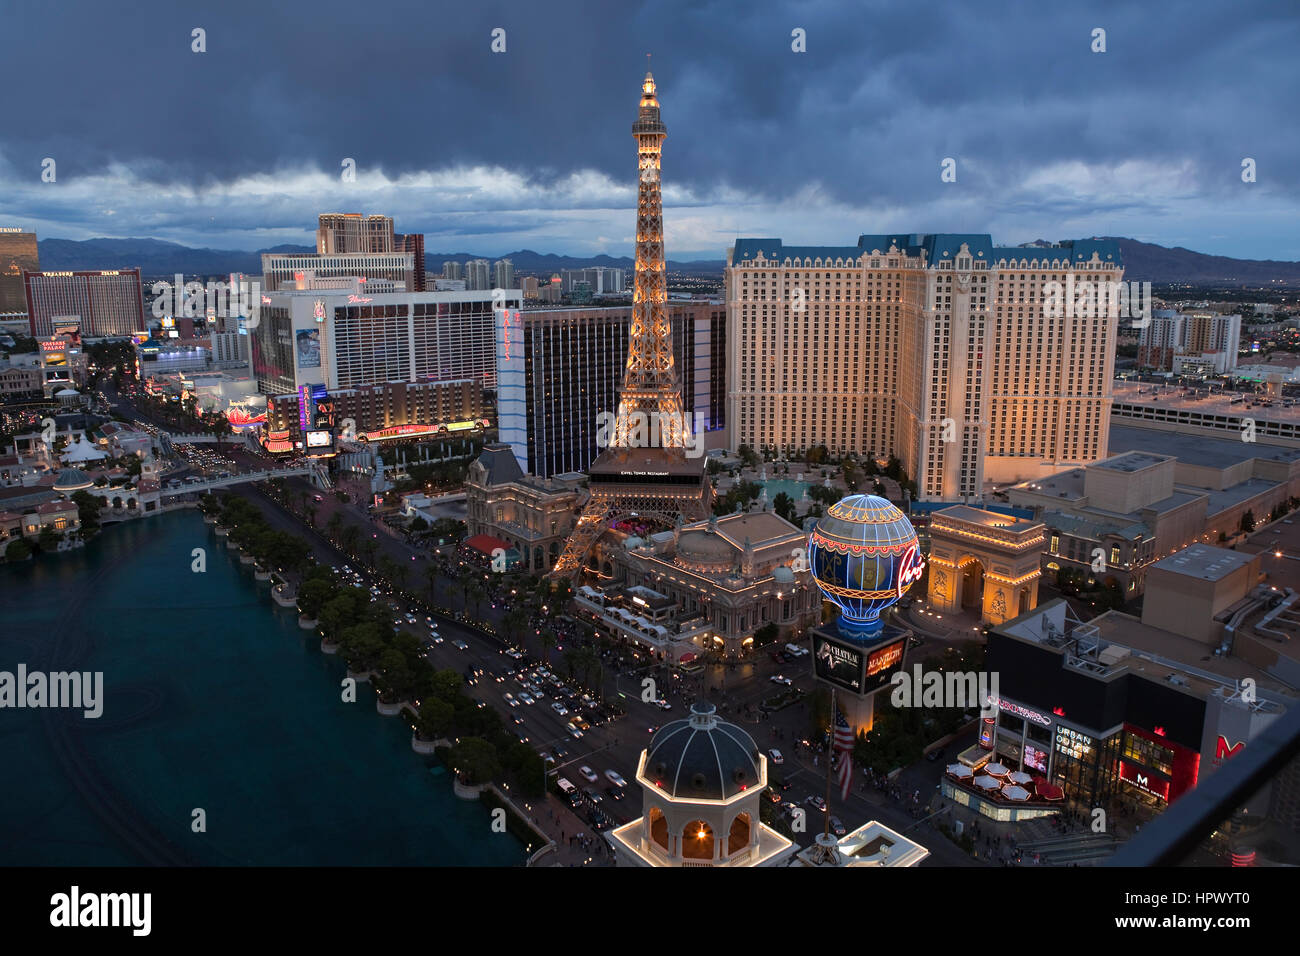 Las Vegas, Nevada, USA - 6 octobre, 2011 : Crépuscule vue de Caesars Palace, Paris et d'autres stations balnéaires le long de la Strip de Las Vegas. Banque D'Images